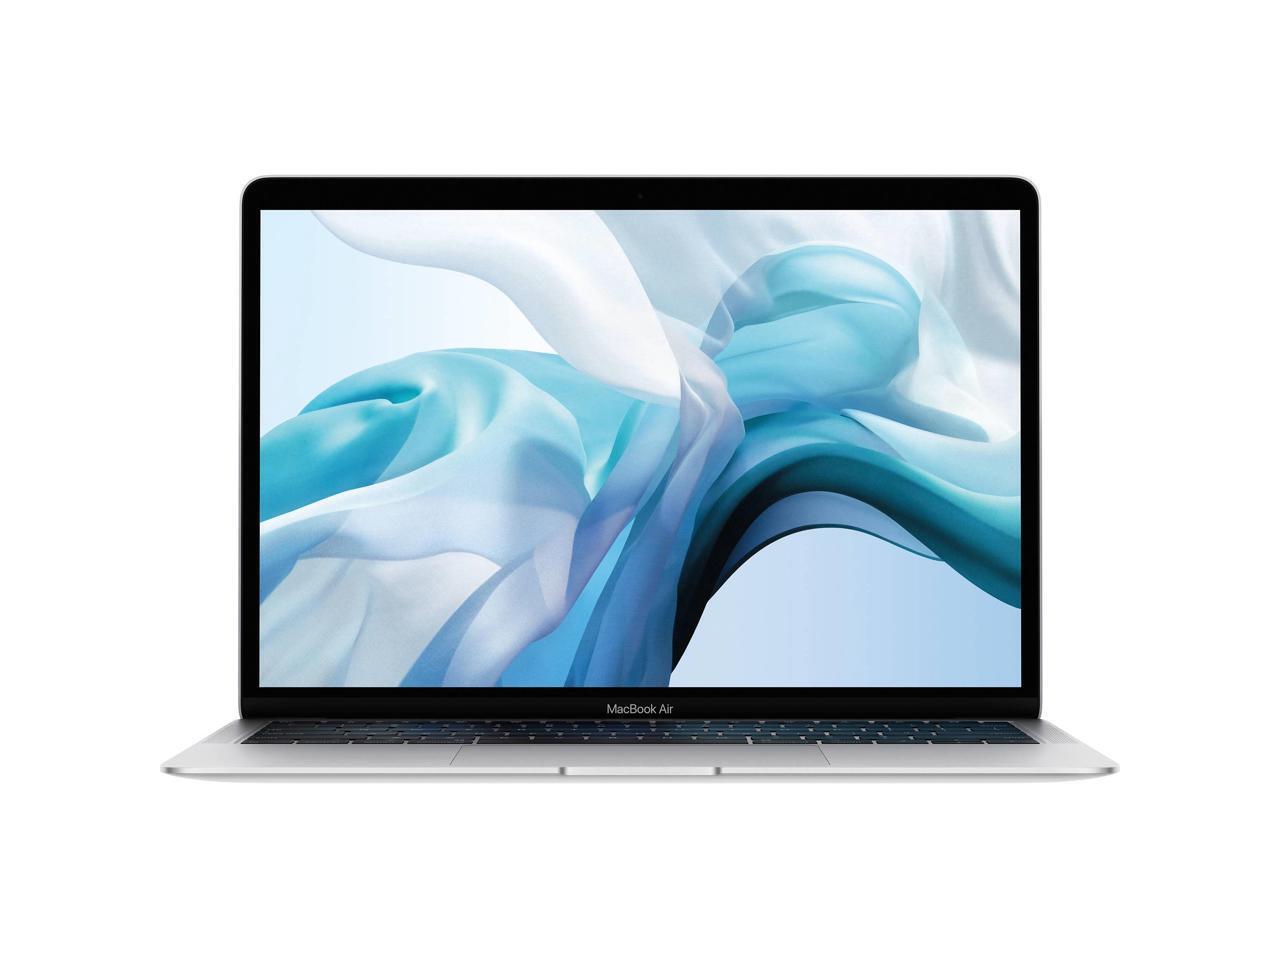 2019 Apple Macbook Air 13'' Core i5-8210Y 1.6GHz 8GB 256GB SSD MVFK2LL/A Grade C